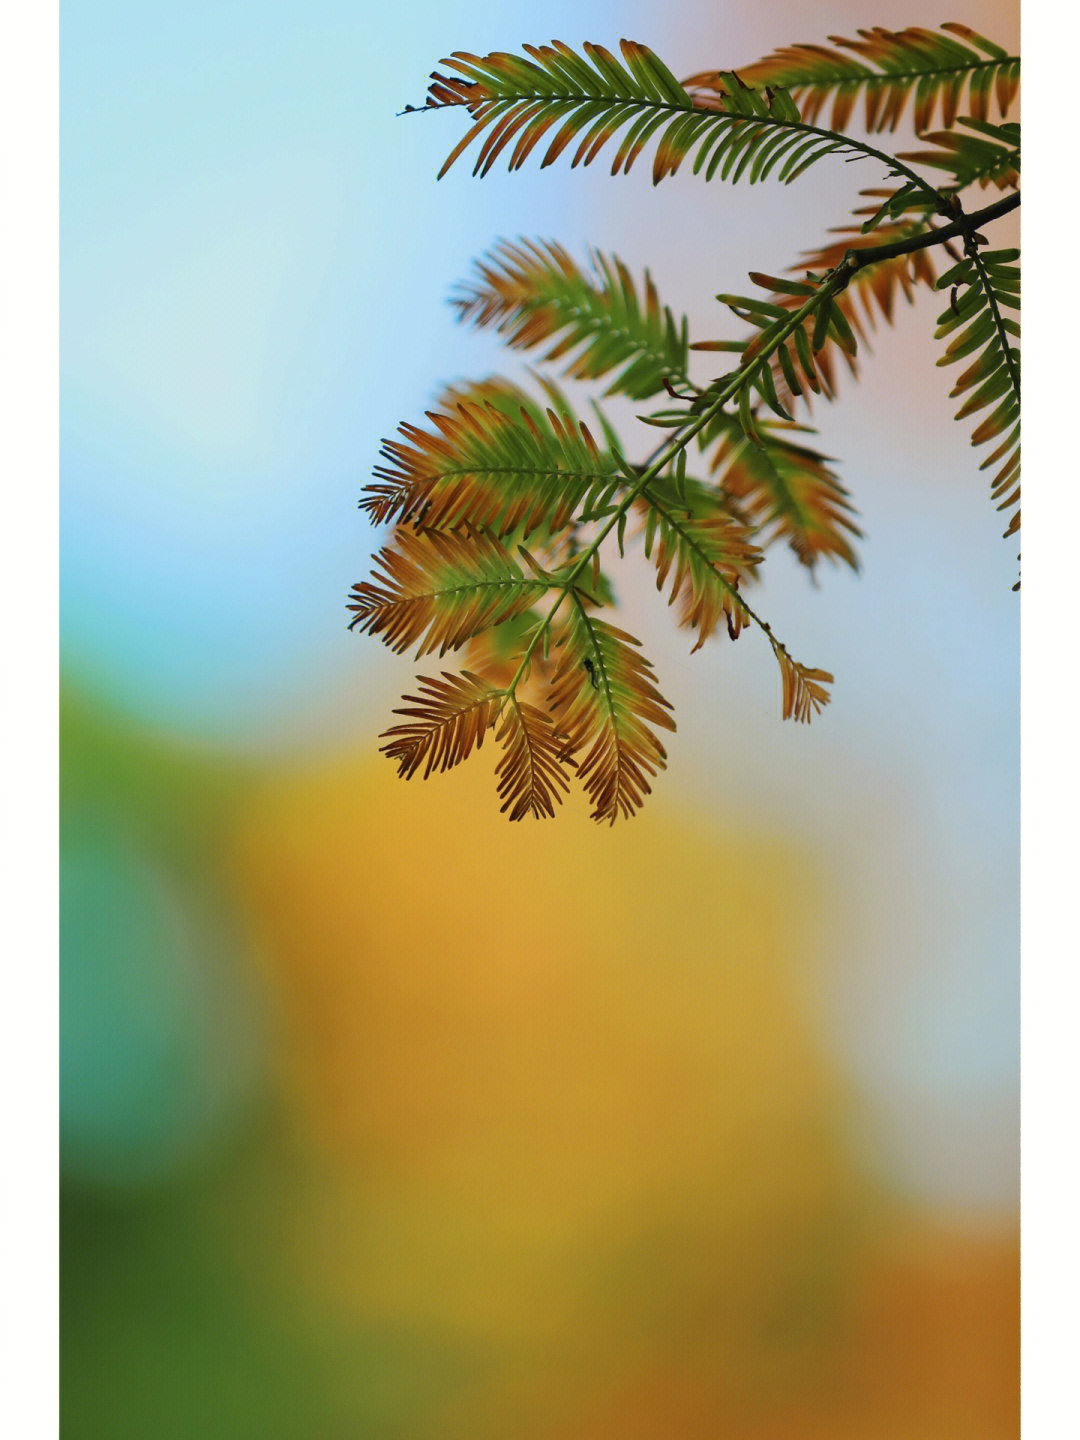 落羽杉在不同季节呈现出不同的状态,这种特征赋予了它的花语和含义